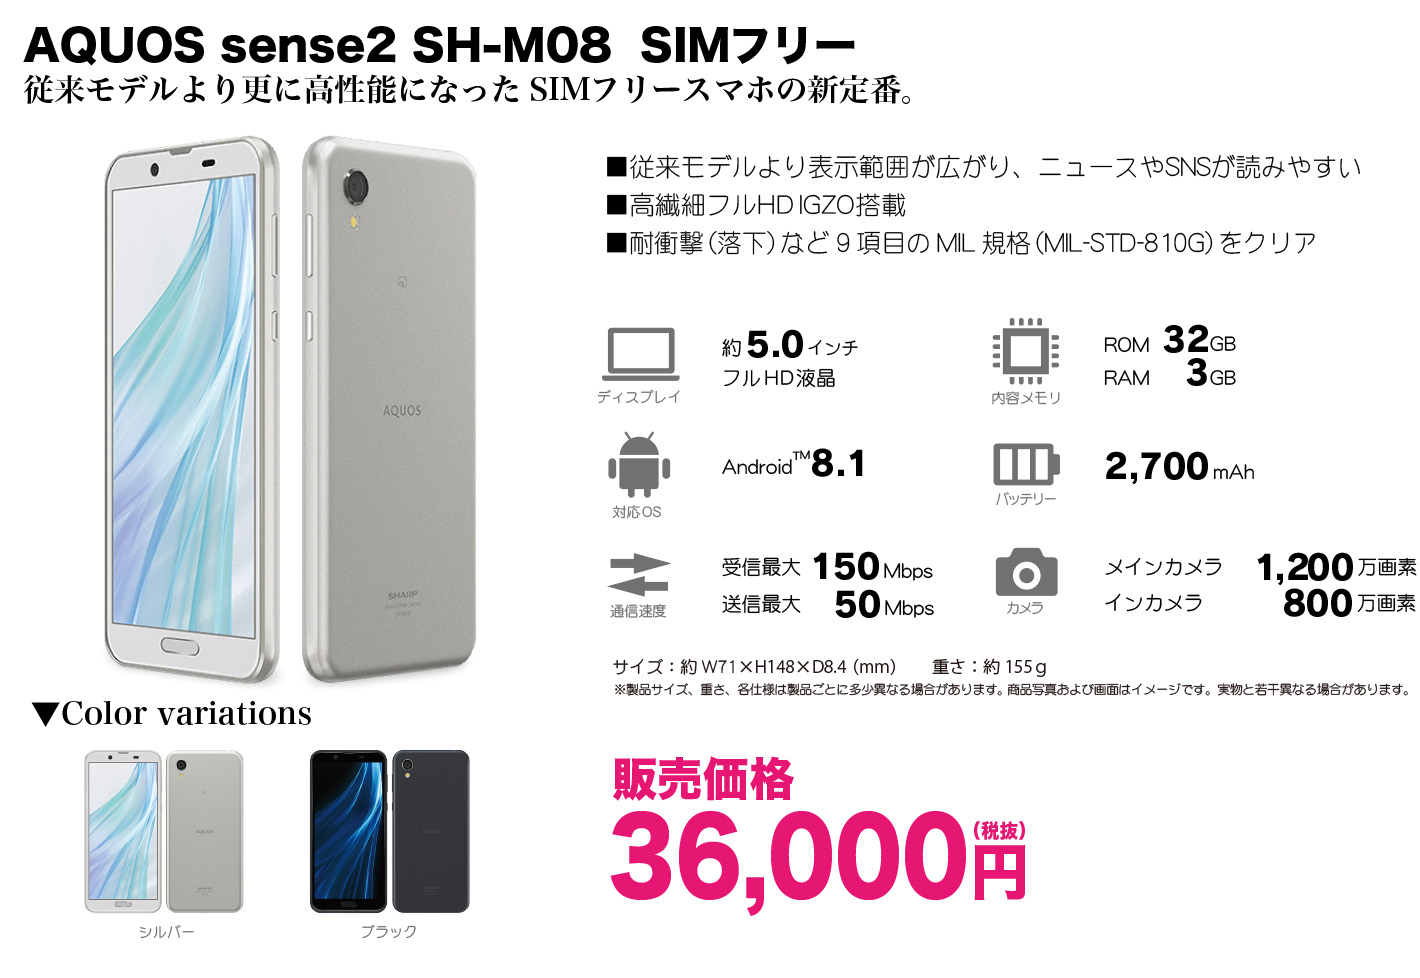 AQUOS SH-M08 販売価格36,000円